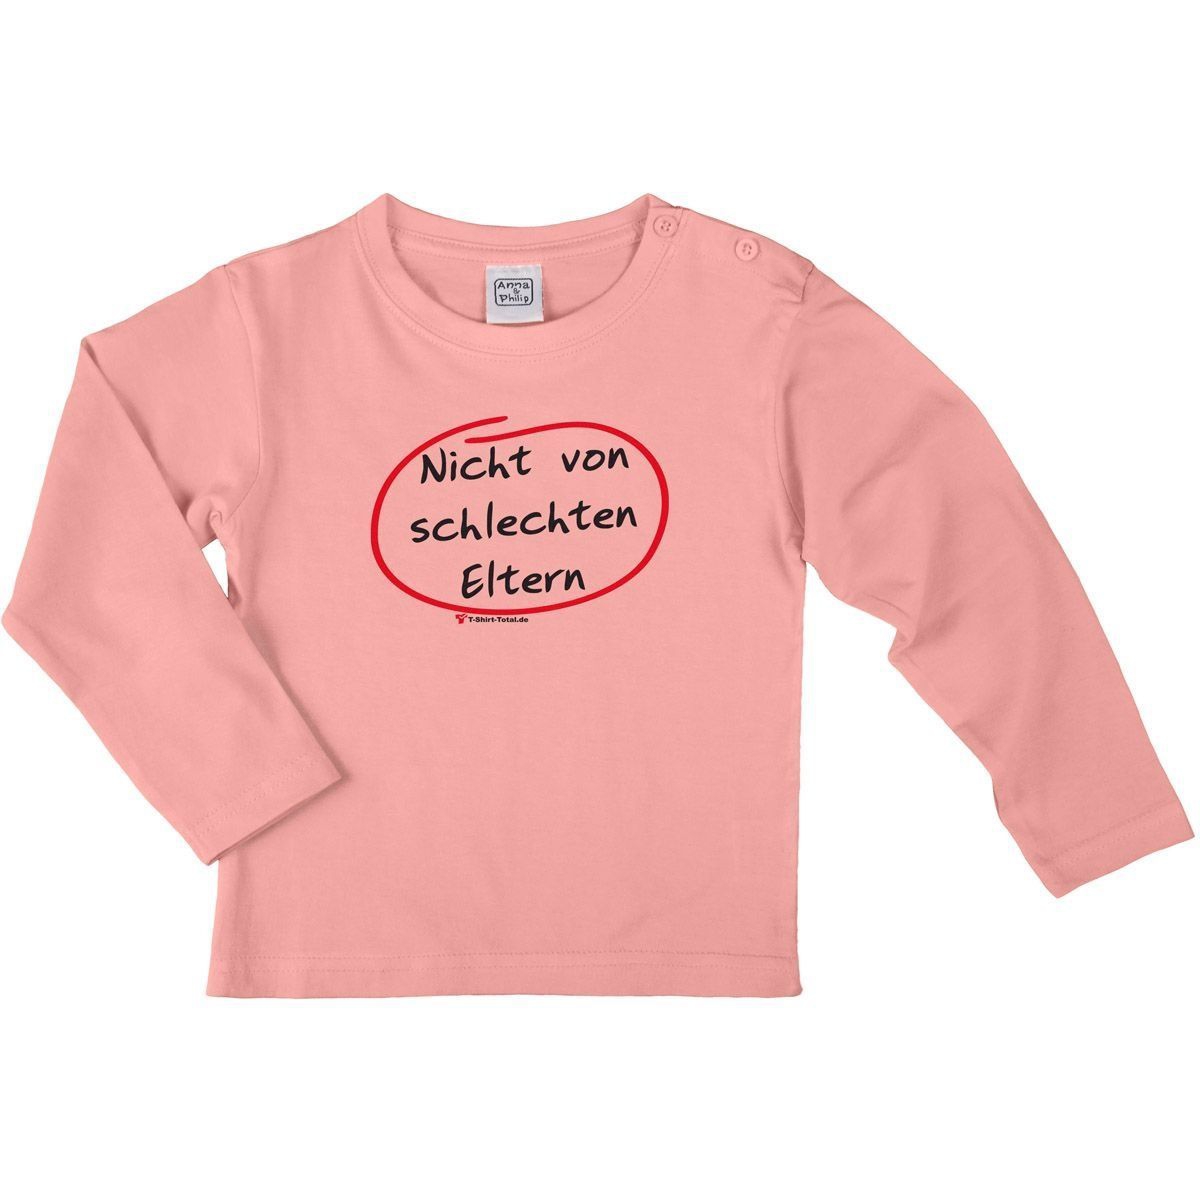 Nicht von schlechten Eltern Kinder Langarm Shirt rosa 122 / 128